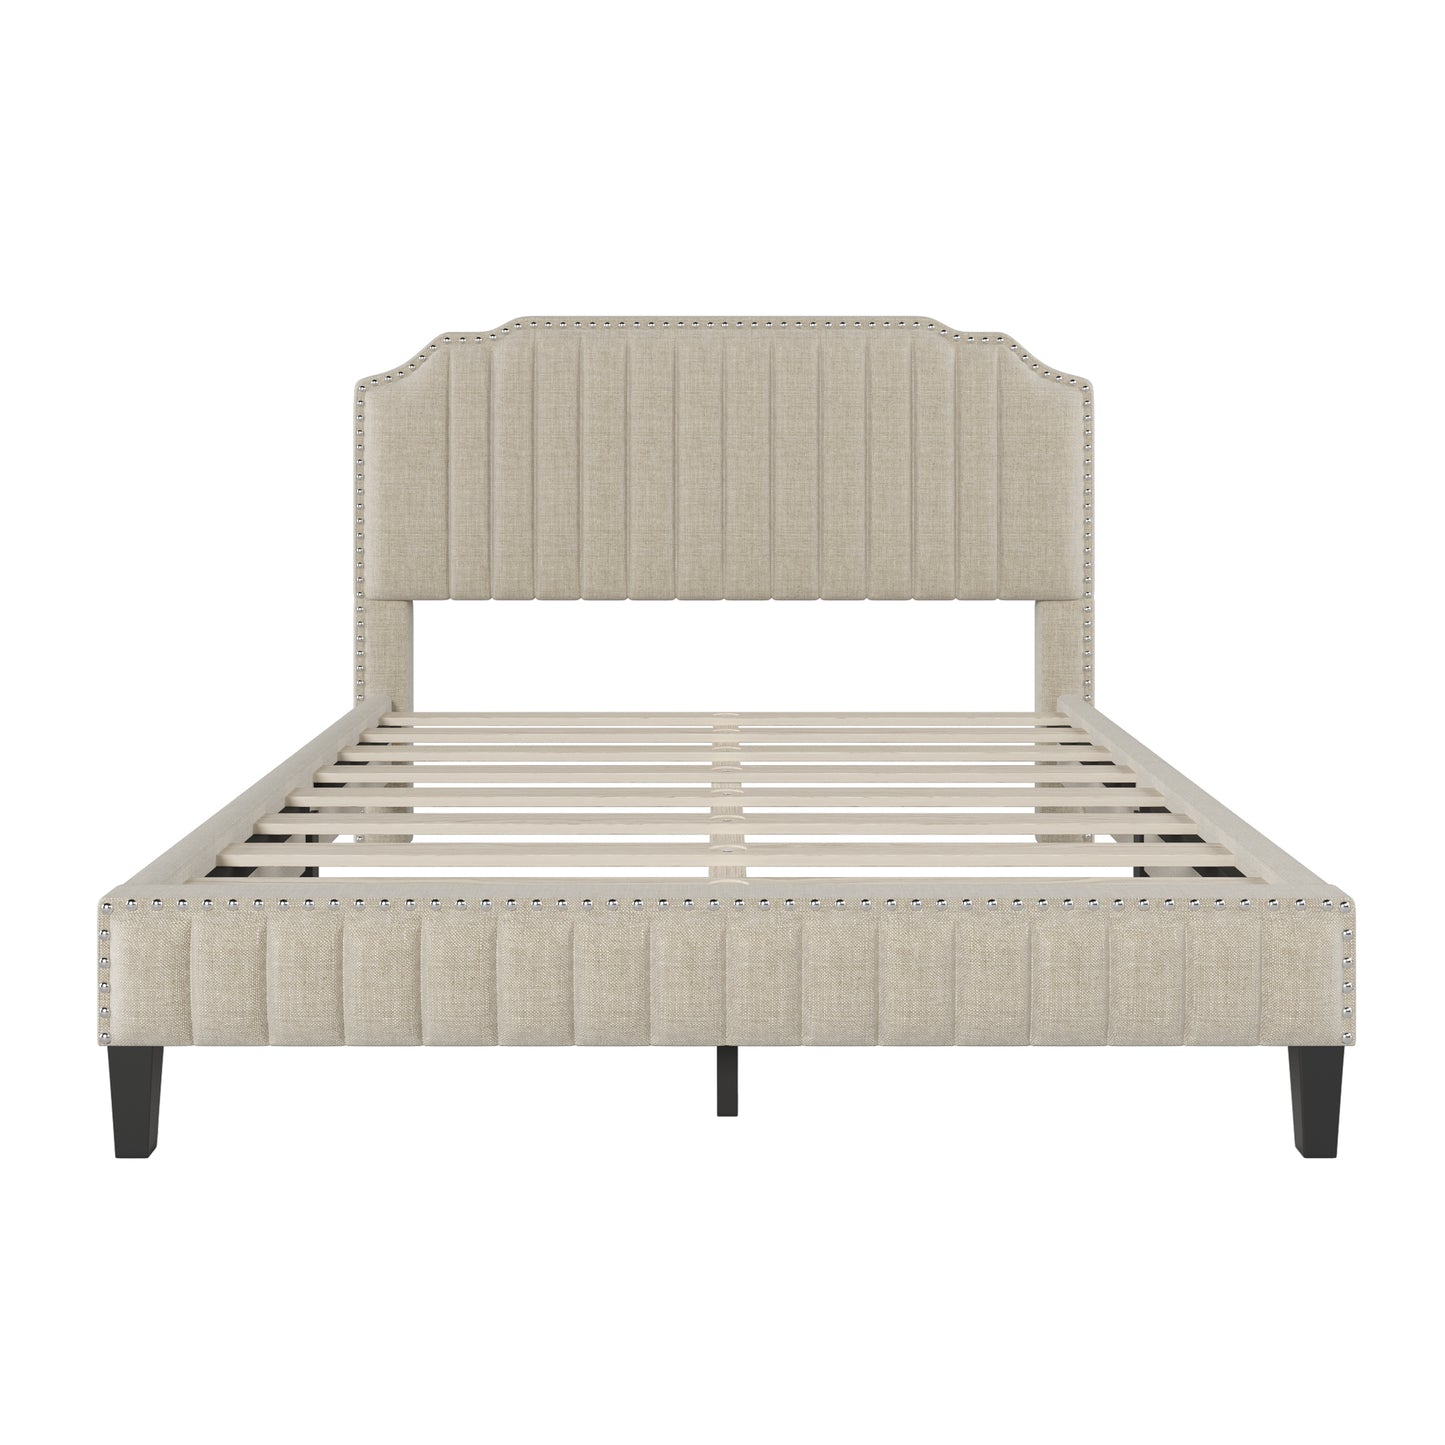 Modern Linen Curved Upholstered Platform Bed, Solid Wood Frame, Nailhead Trim, Beige (Queen)